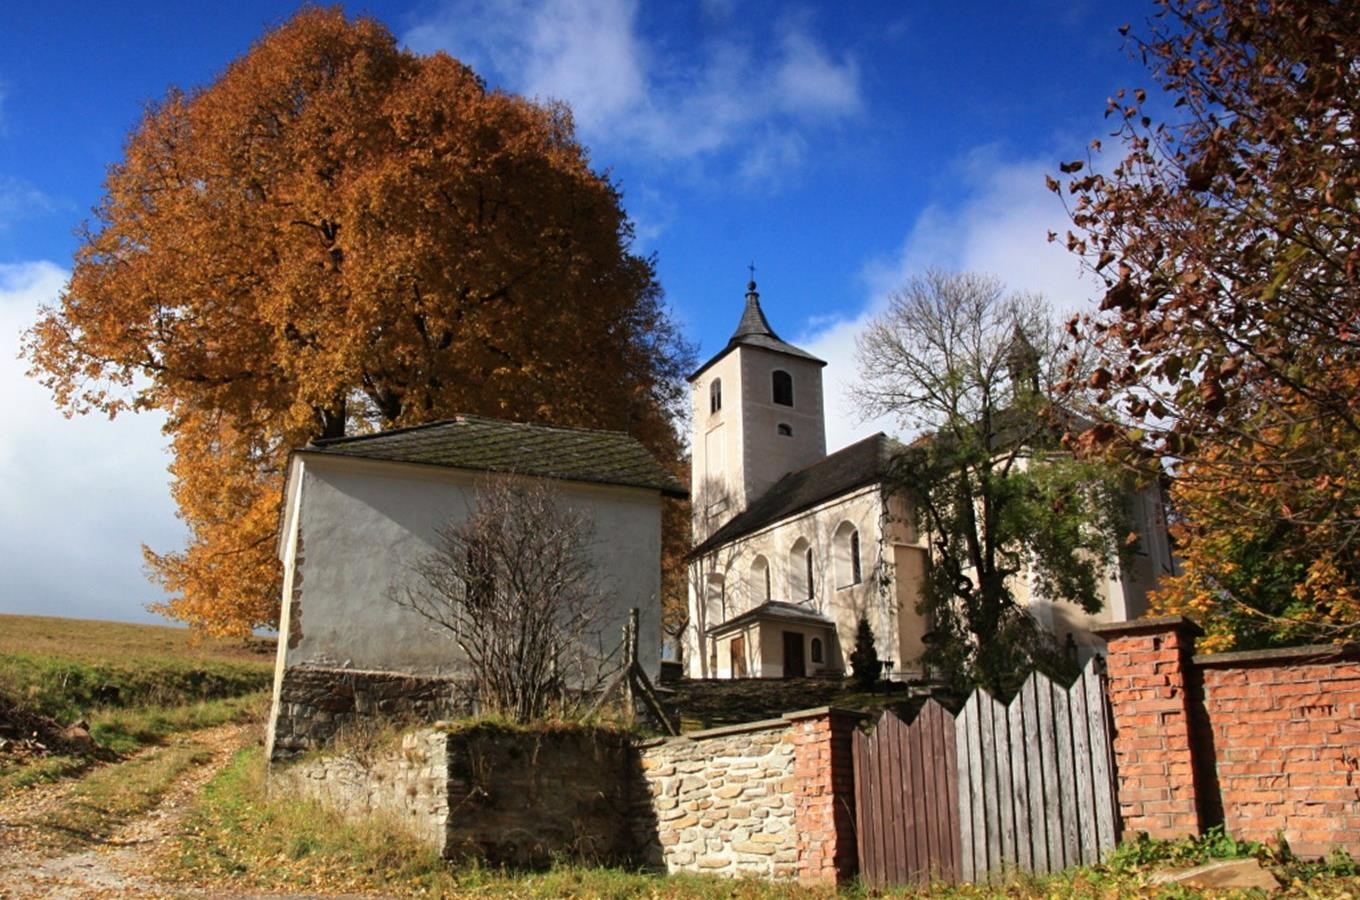 Hřbitovní kostel Nanebevzetí Panny Marie v Horním Maršově